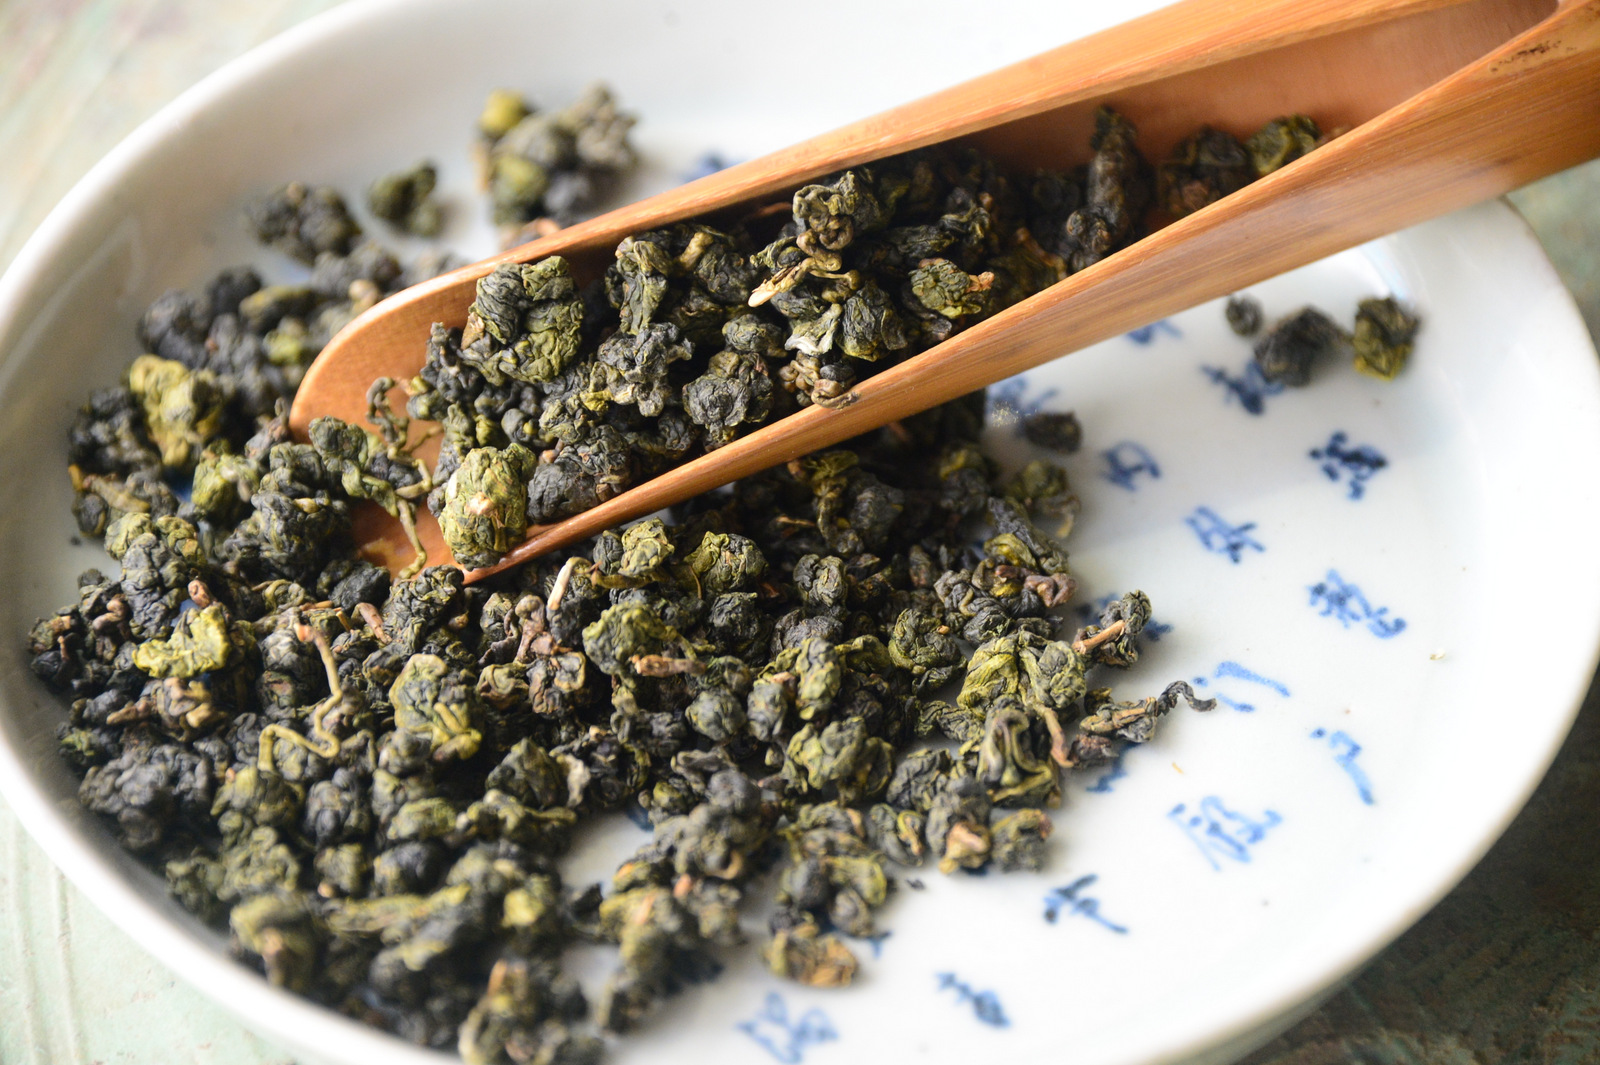 ô long là một trong những loại trà được ưa chuộng nhiều nhất trên thế giới vì hương vị và những công dụng